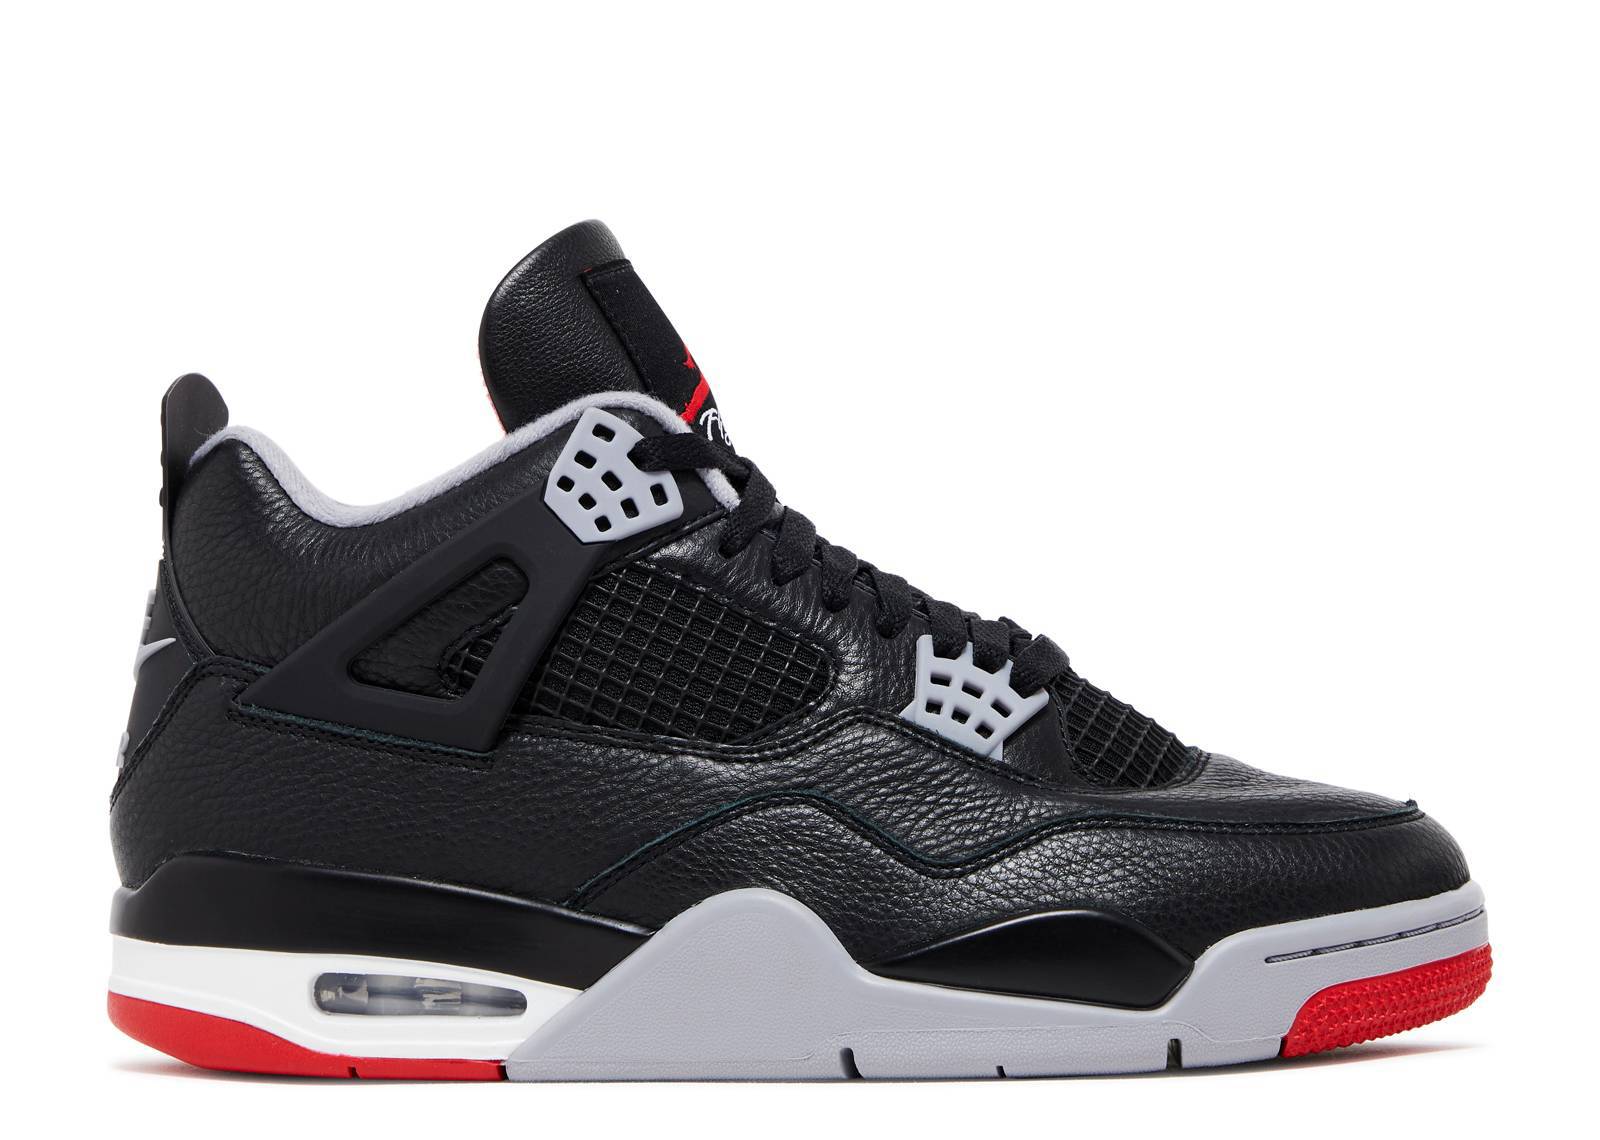 Air Jordan 4 Retro Bred Reimagined men's sneakers